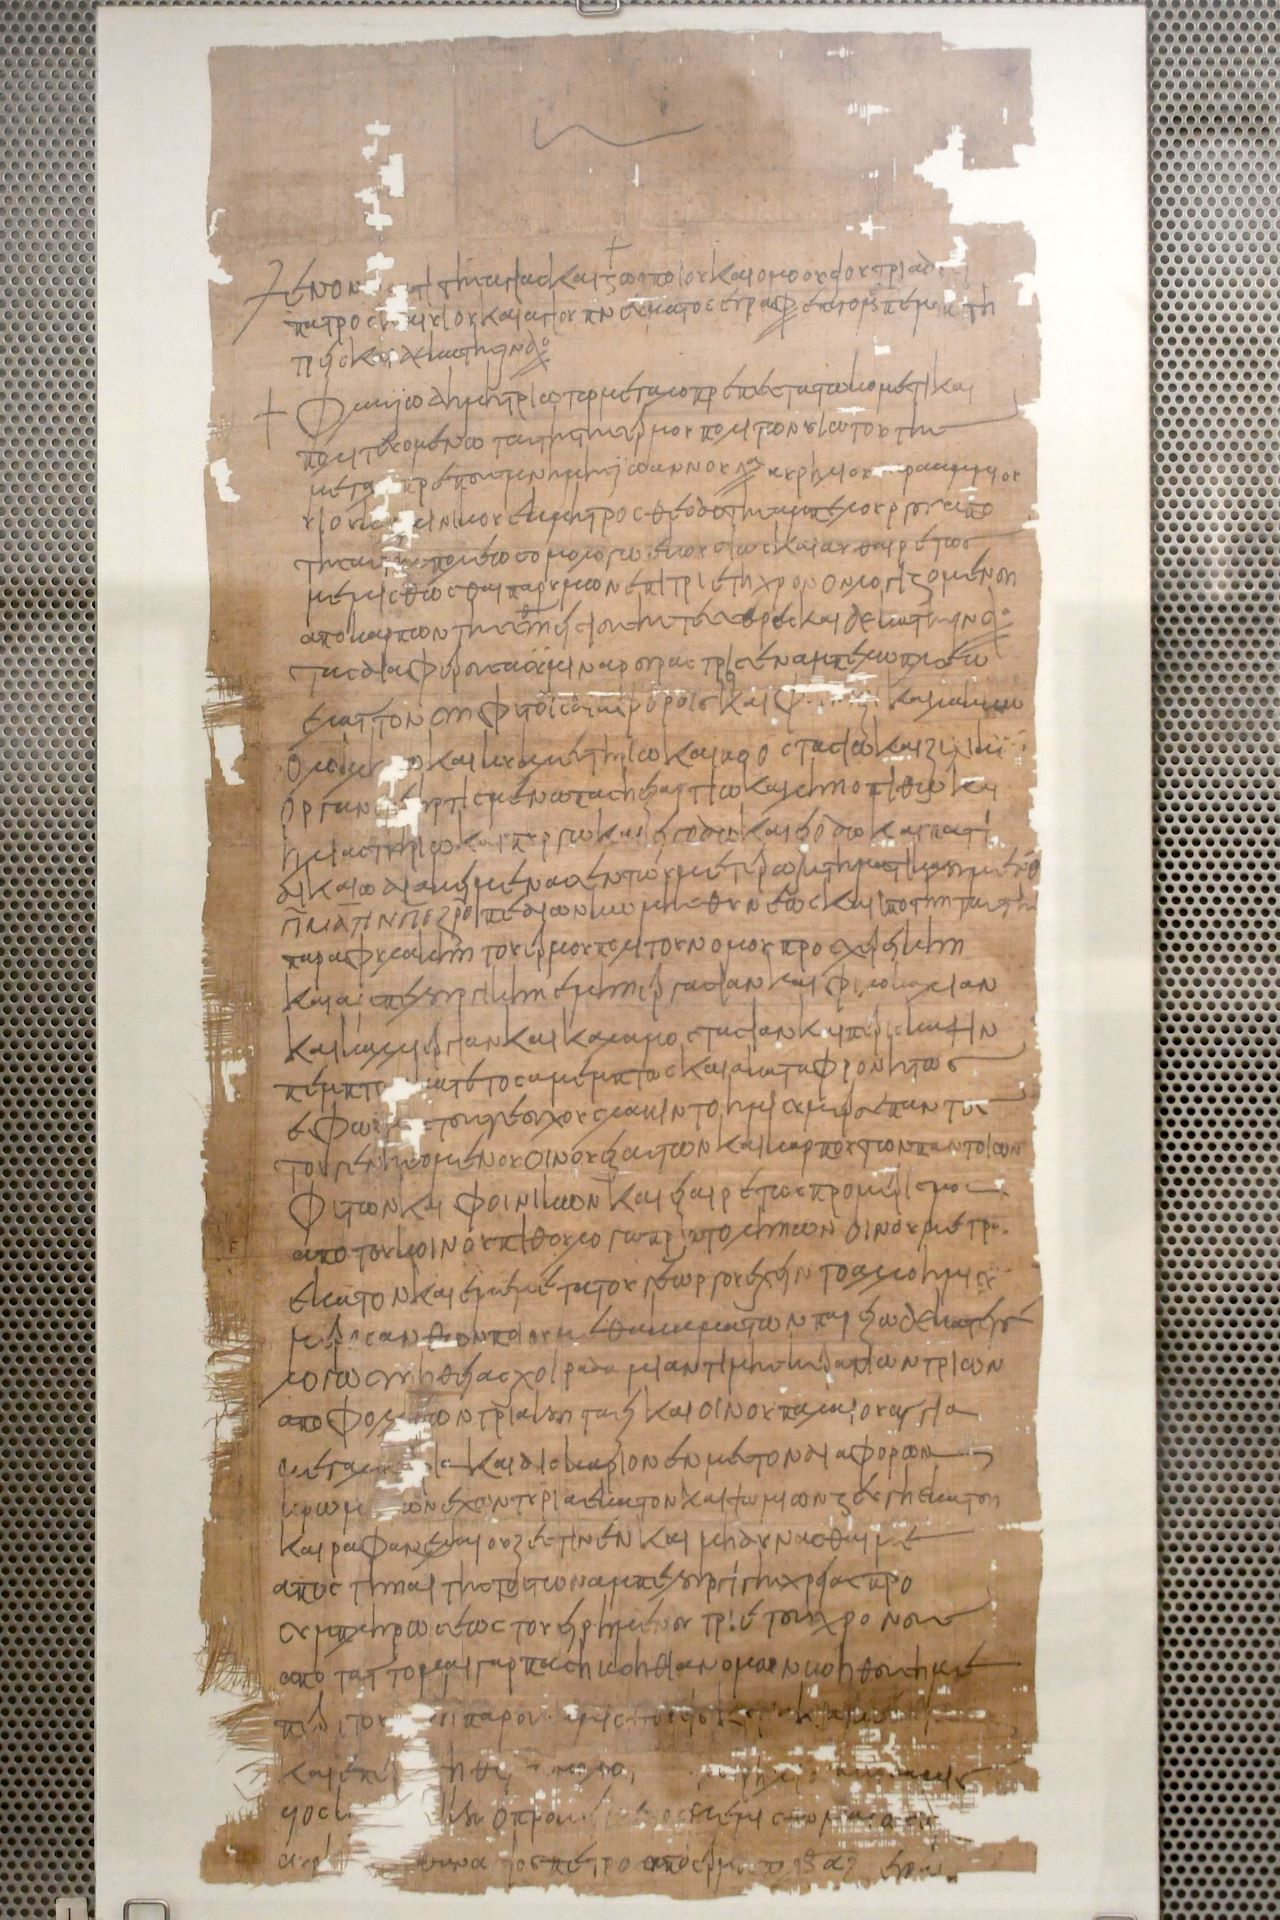 blog:2018-11-17-texte-aus-ferner-zeit:2018-11-17-wien-papyrusmuseum-017b.jpg